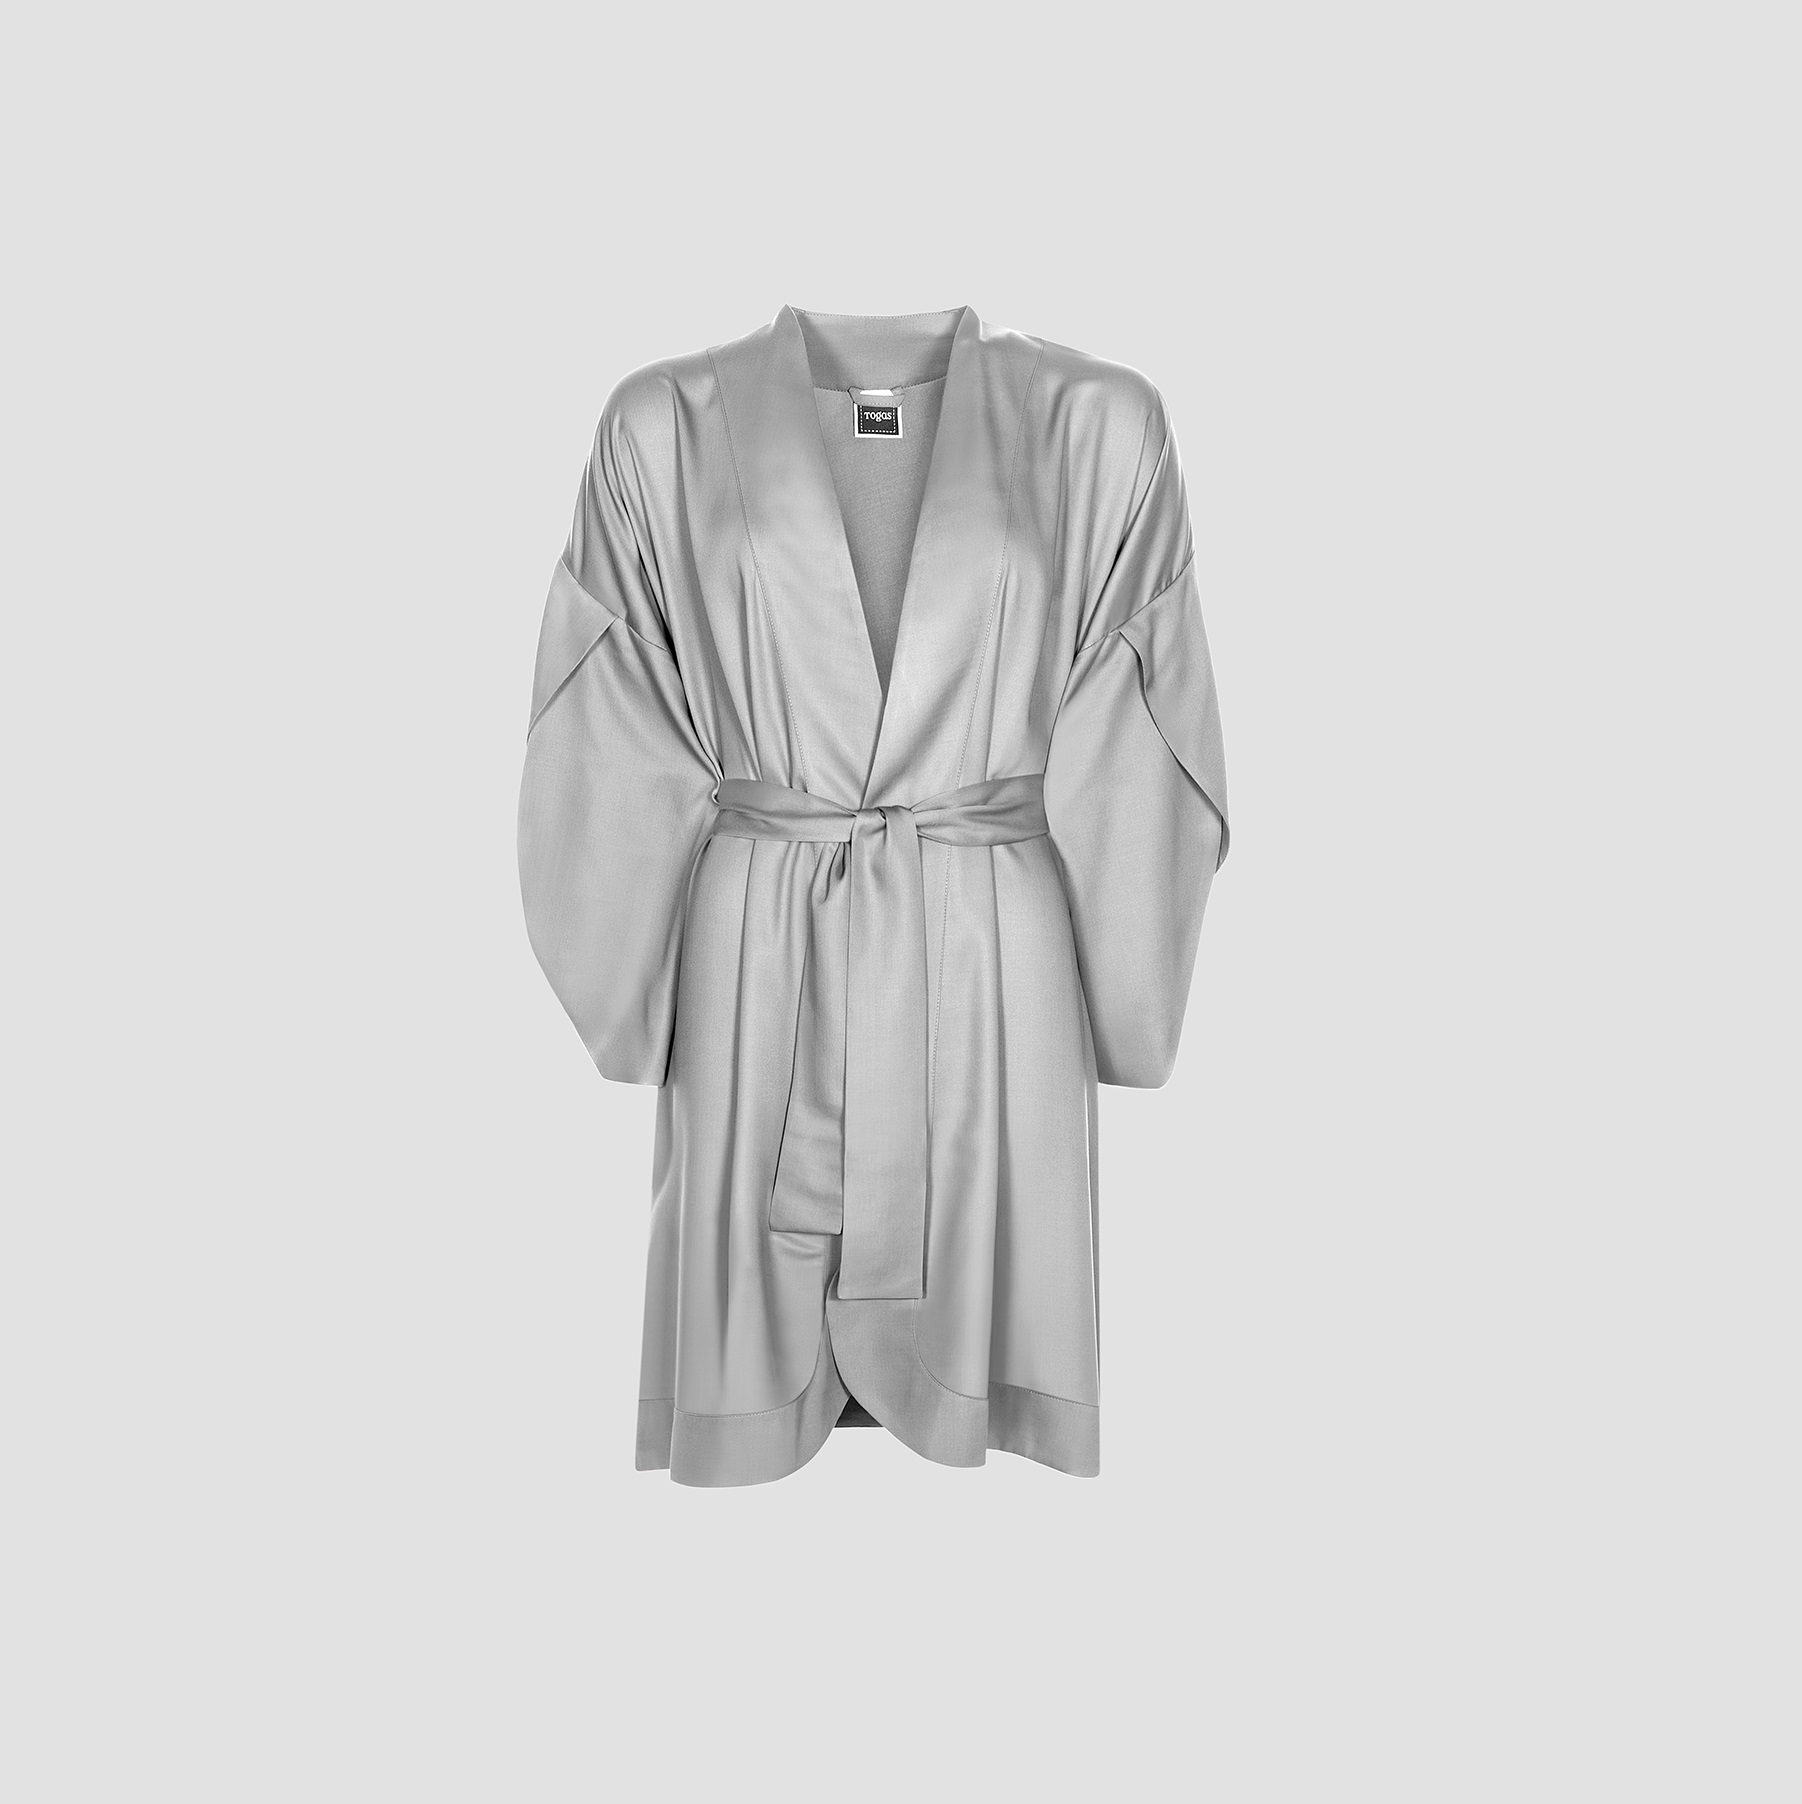 Халат-кимоно короткий Togas Наоми серый S(44) халат кимоно короткий togas наоми серый m 46